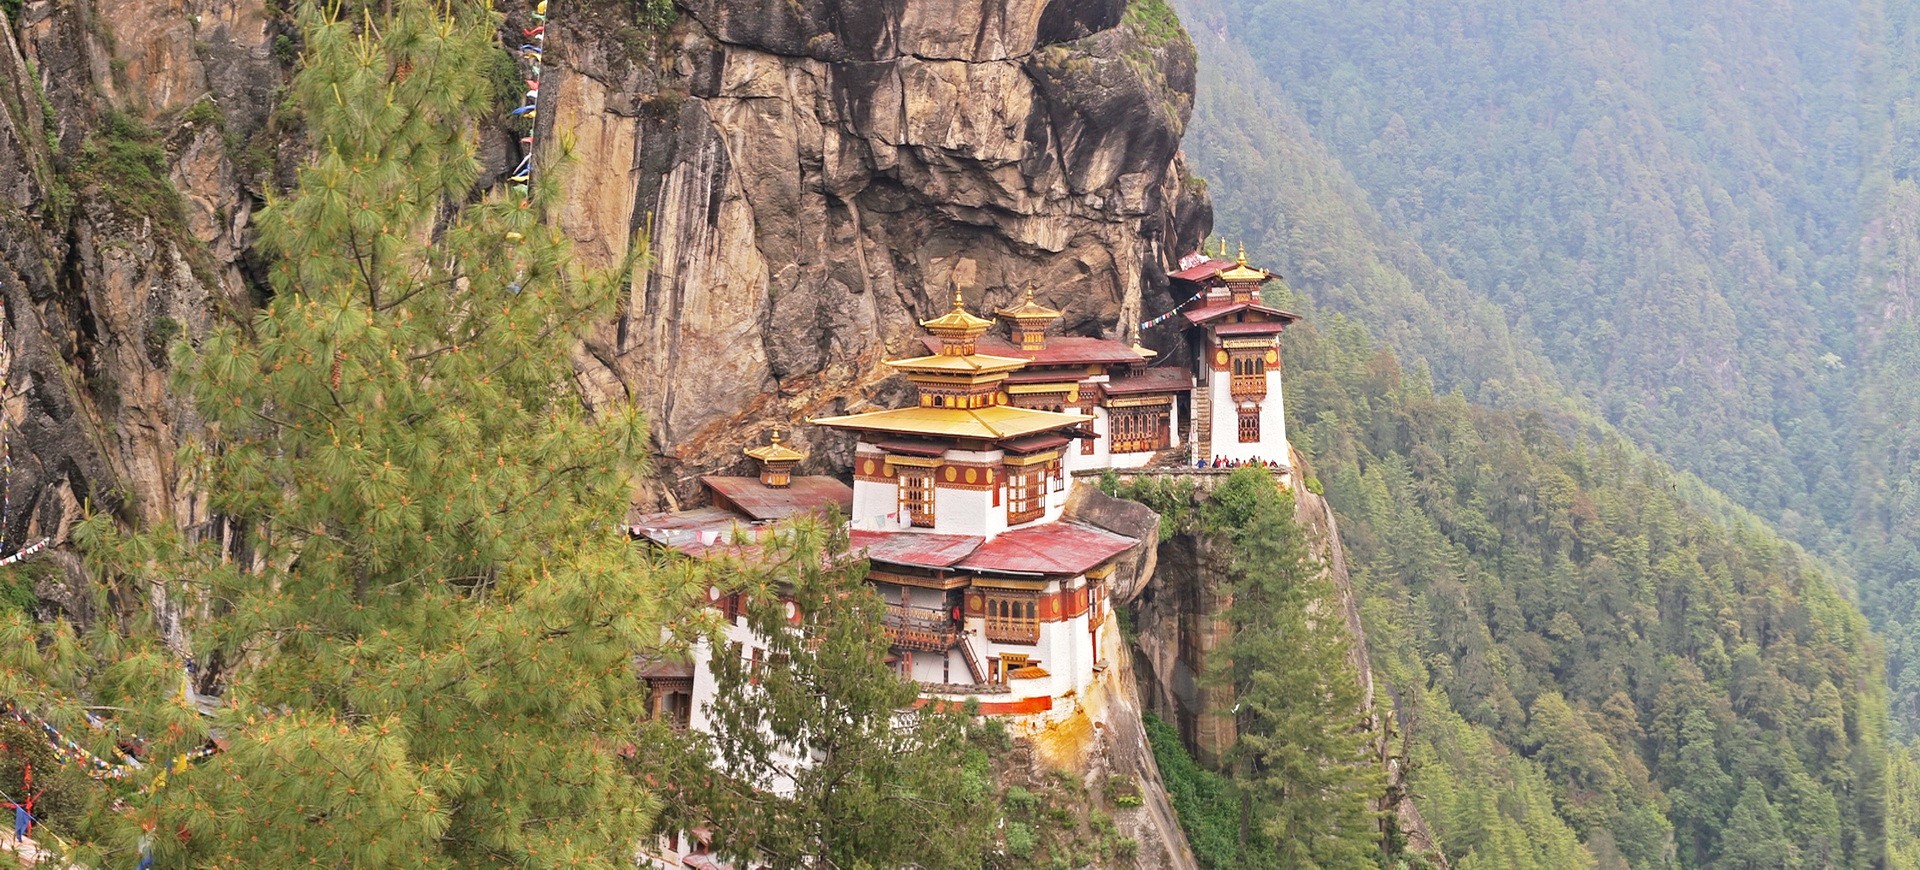 Monastère de Taktsang Palphug au Bhoutan